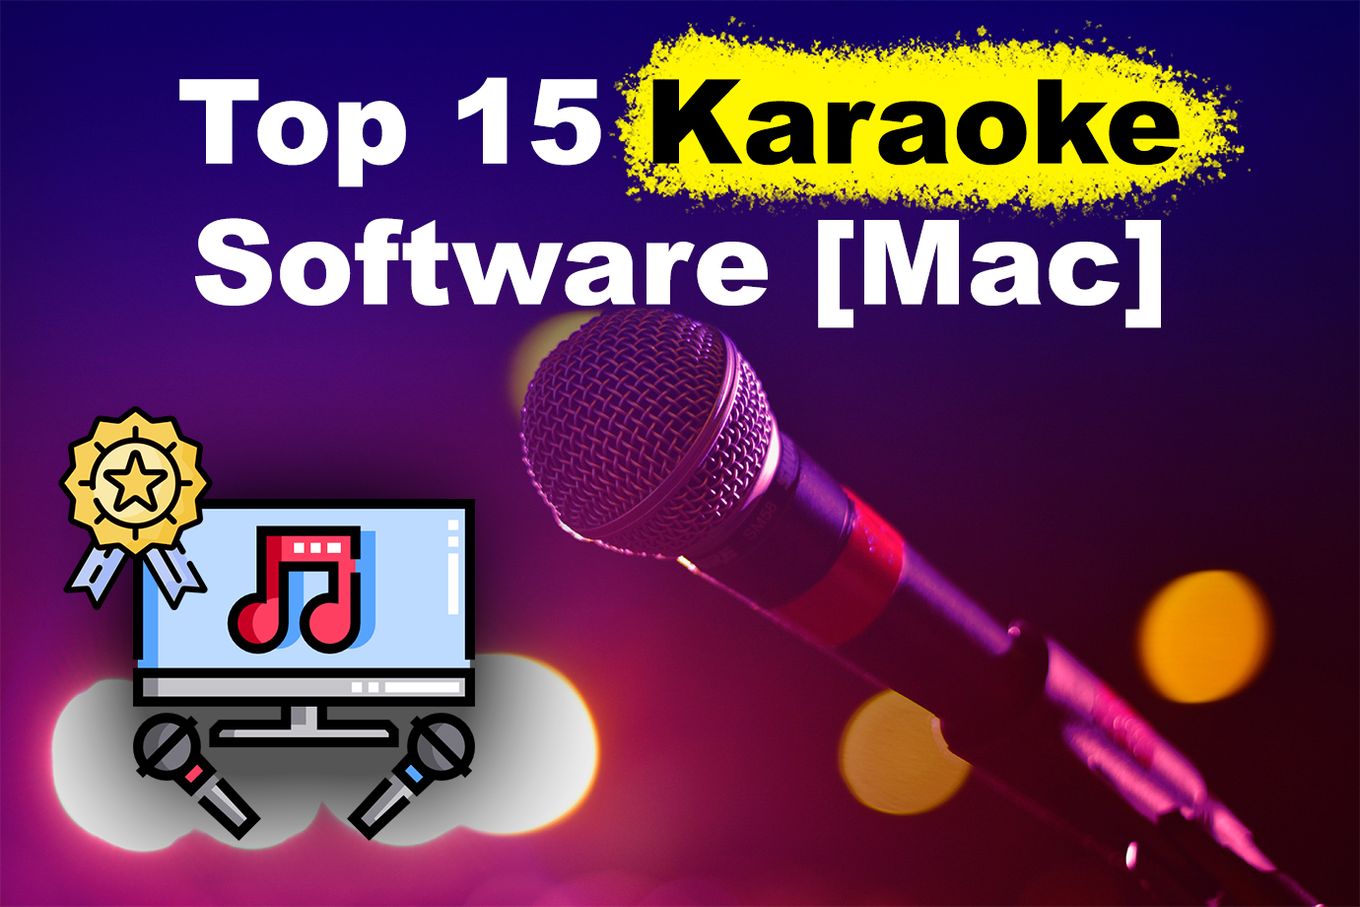 karaoke for mac